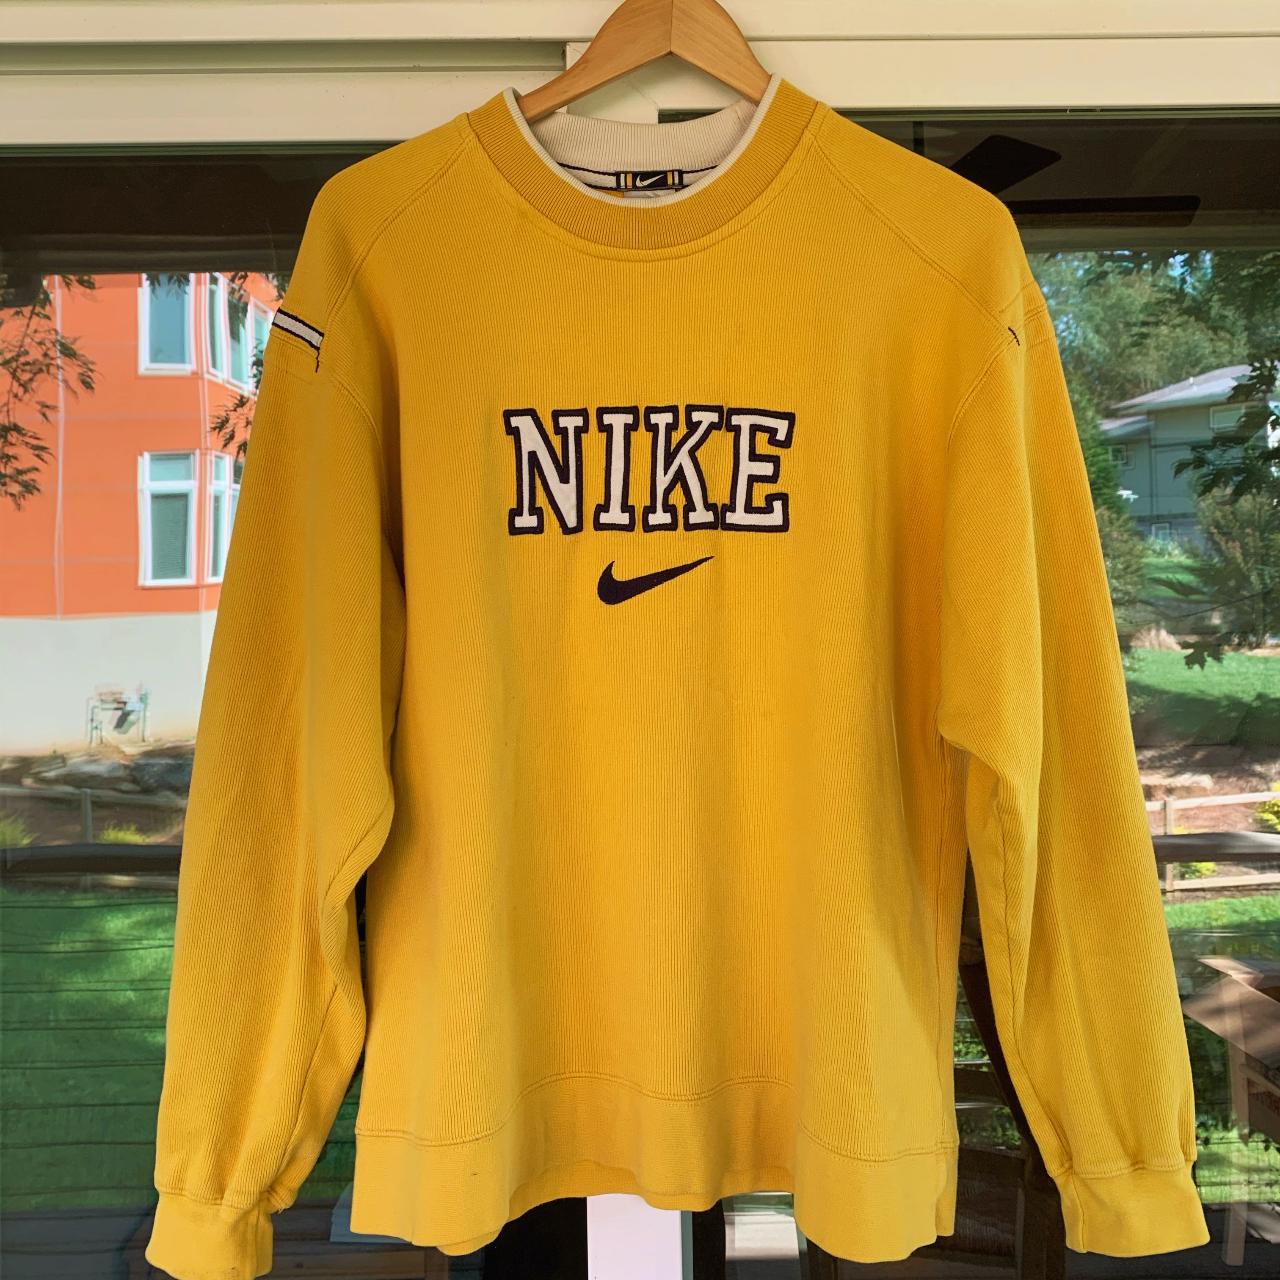 Nike Vintage Crewneck Sweatshirt Green FREE - Depop